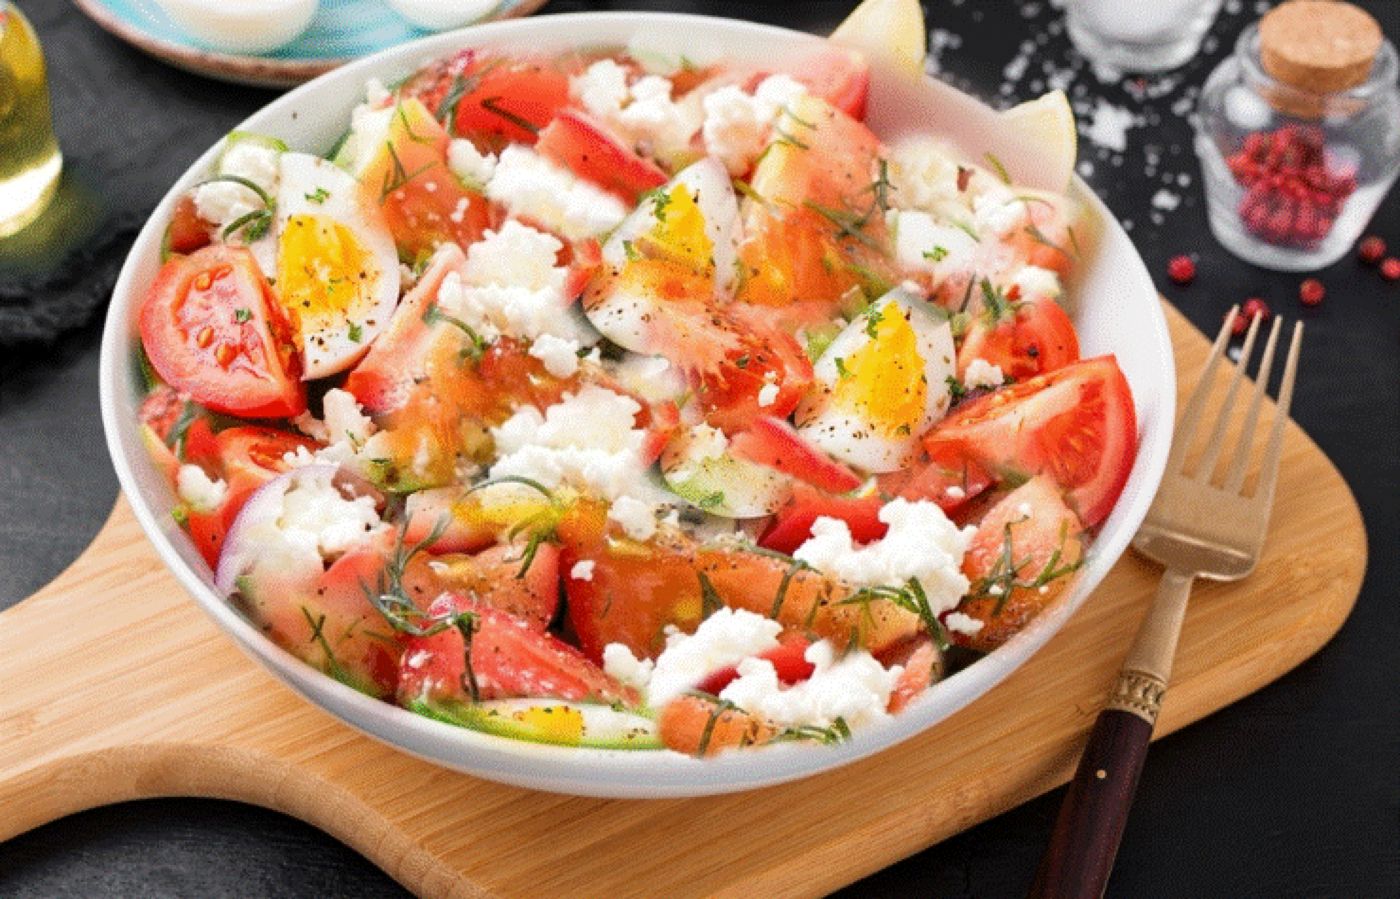 Salată argentiniană, simplă, ușoară, o minunăție pentru zilele caniculare. Iată ingredientul care o face specială